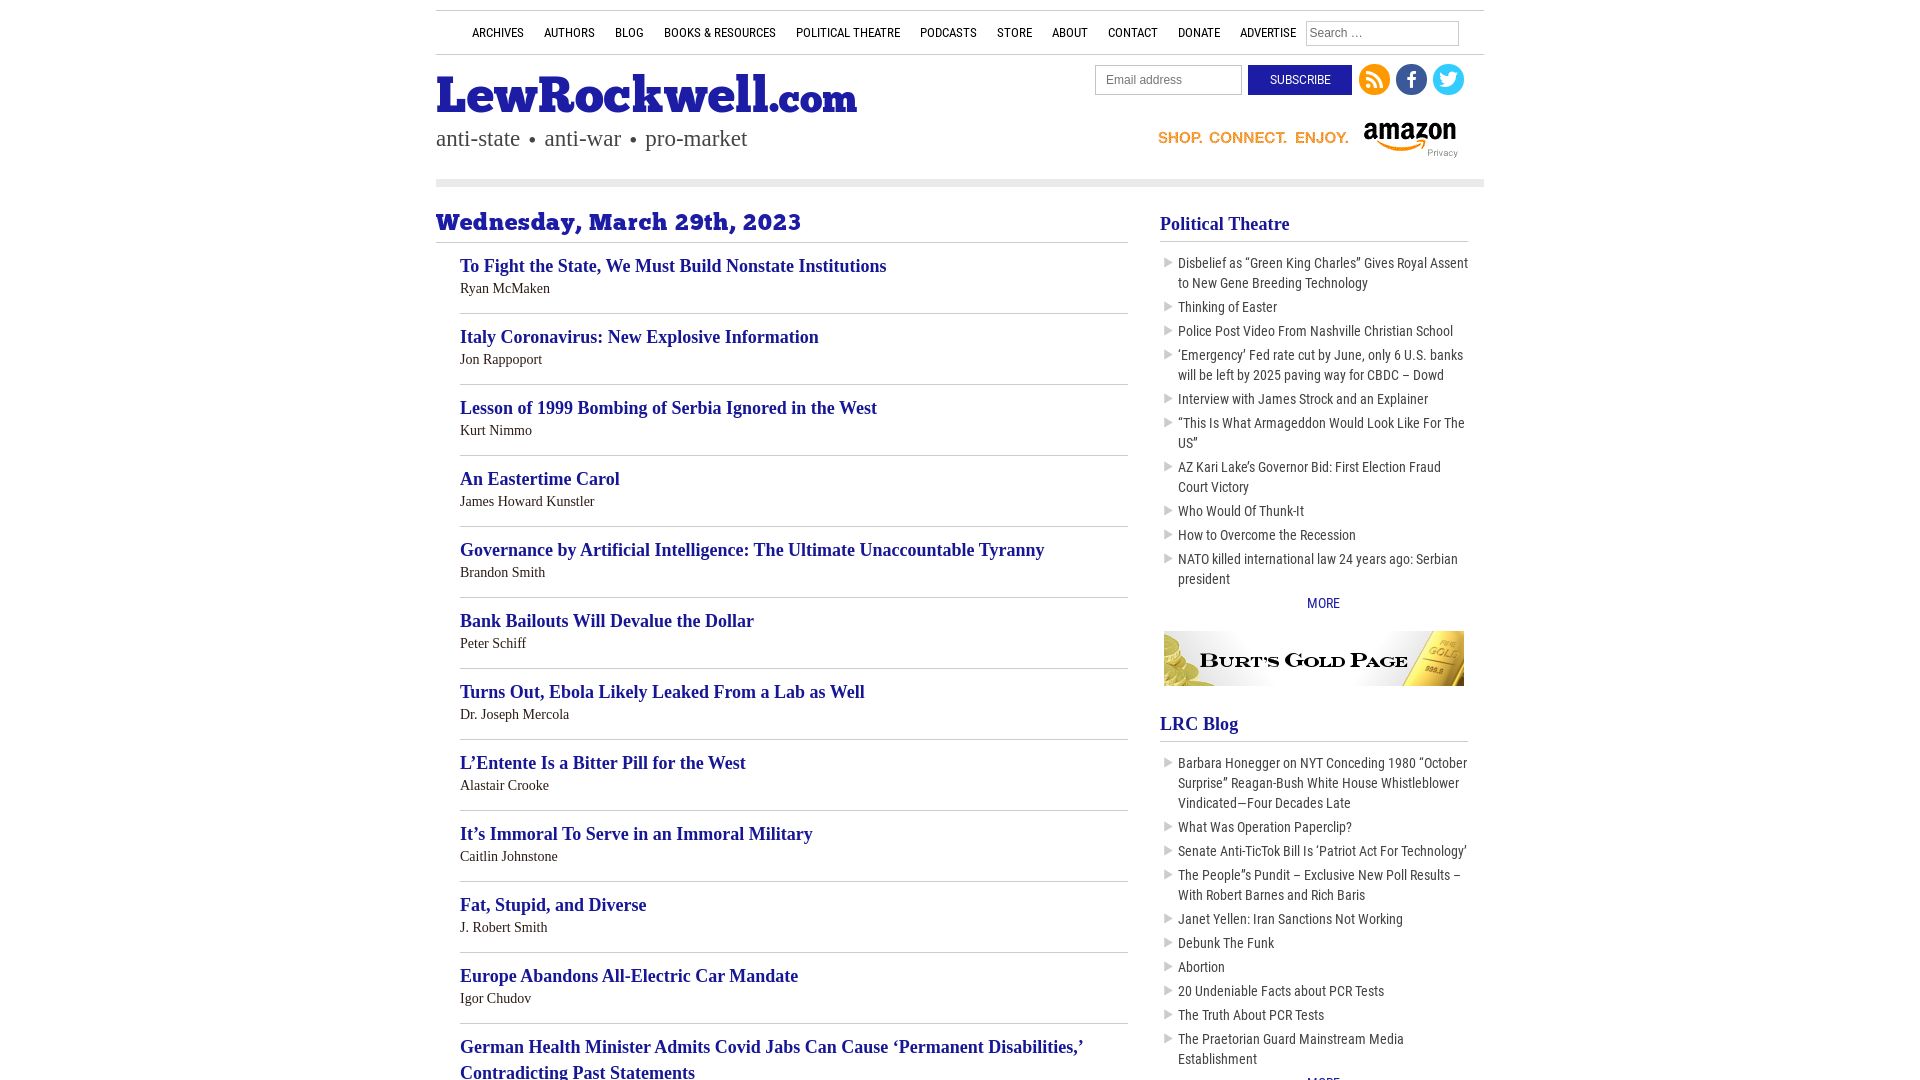 Stato del sito web lewrockwell.com è   ONLINE